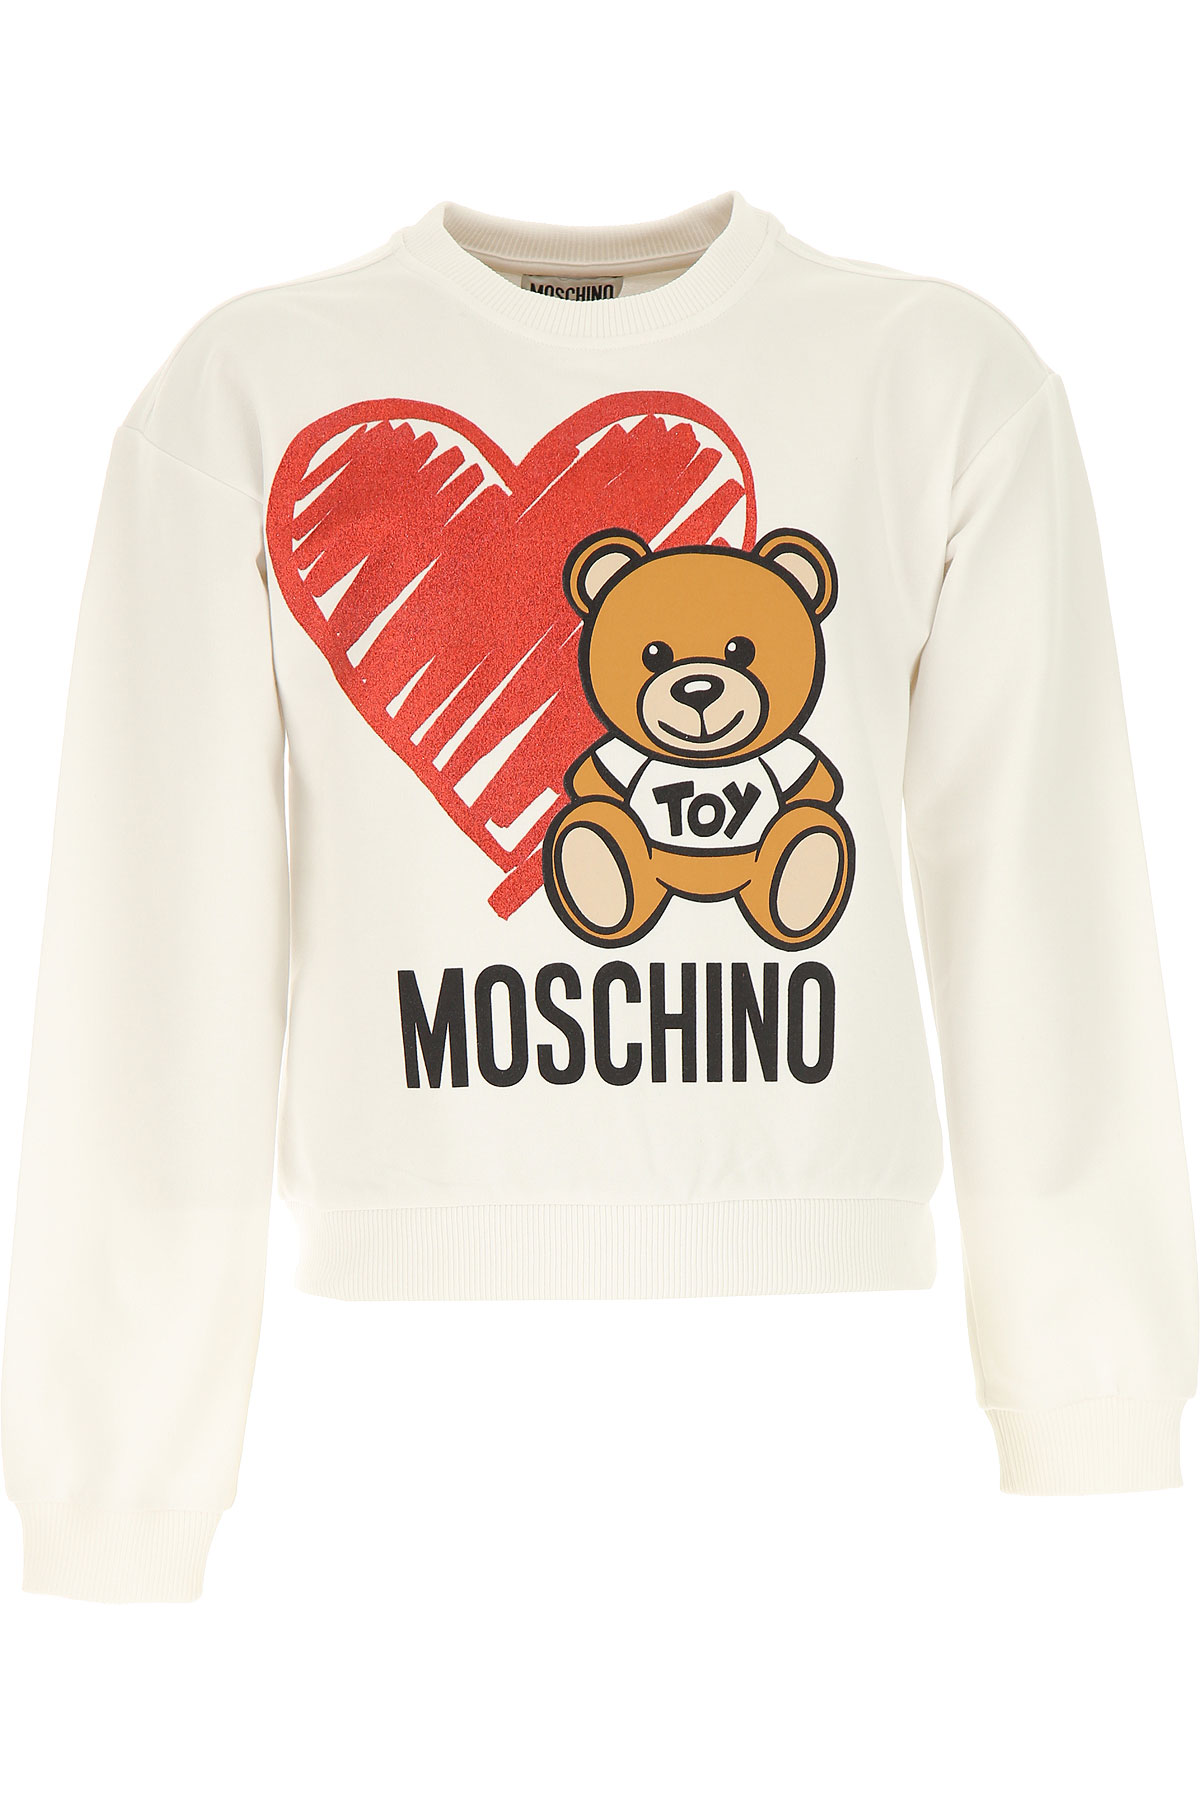 Moschino Kinder Sweatshirt & Kapuzenpullover für Mädchen Günstig im Sale, Weiss, Baumwolle, 2017, 10Y 12Y 4Y 6Y 8Y